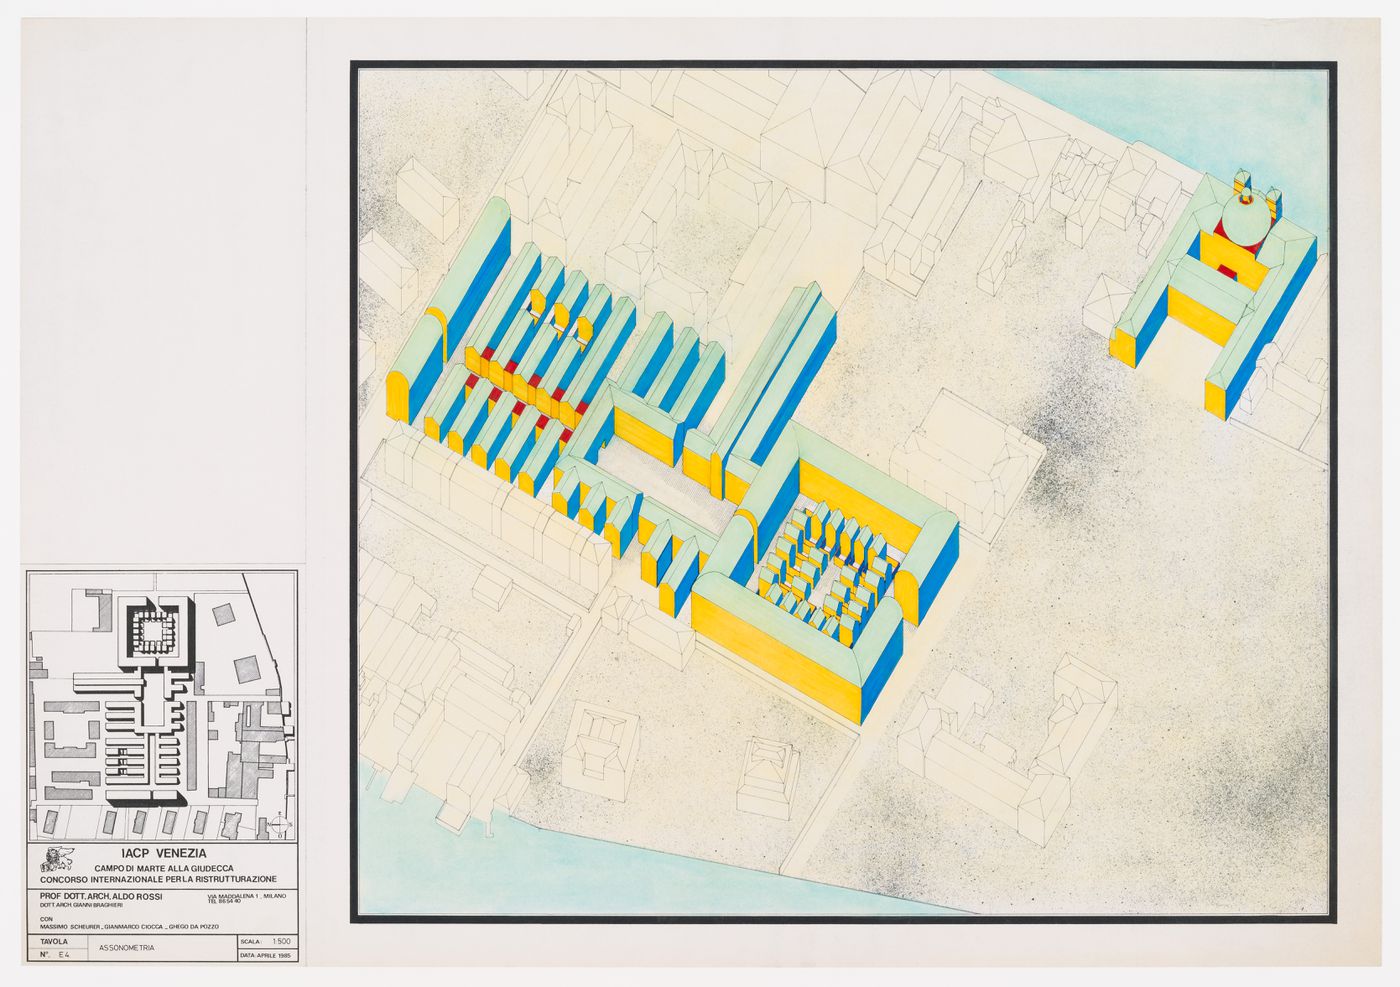 Project for redevelopment of the Campo di Marte area of La Giudecca, Venice, Italy: axonometric